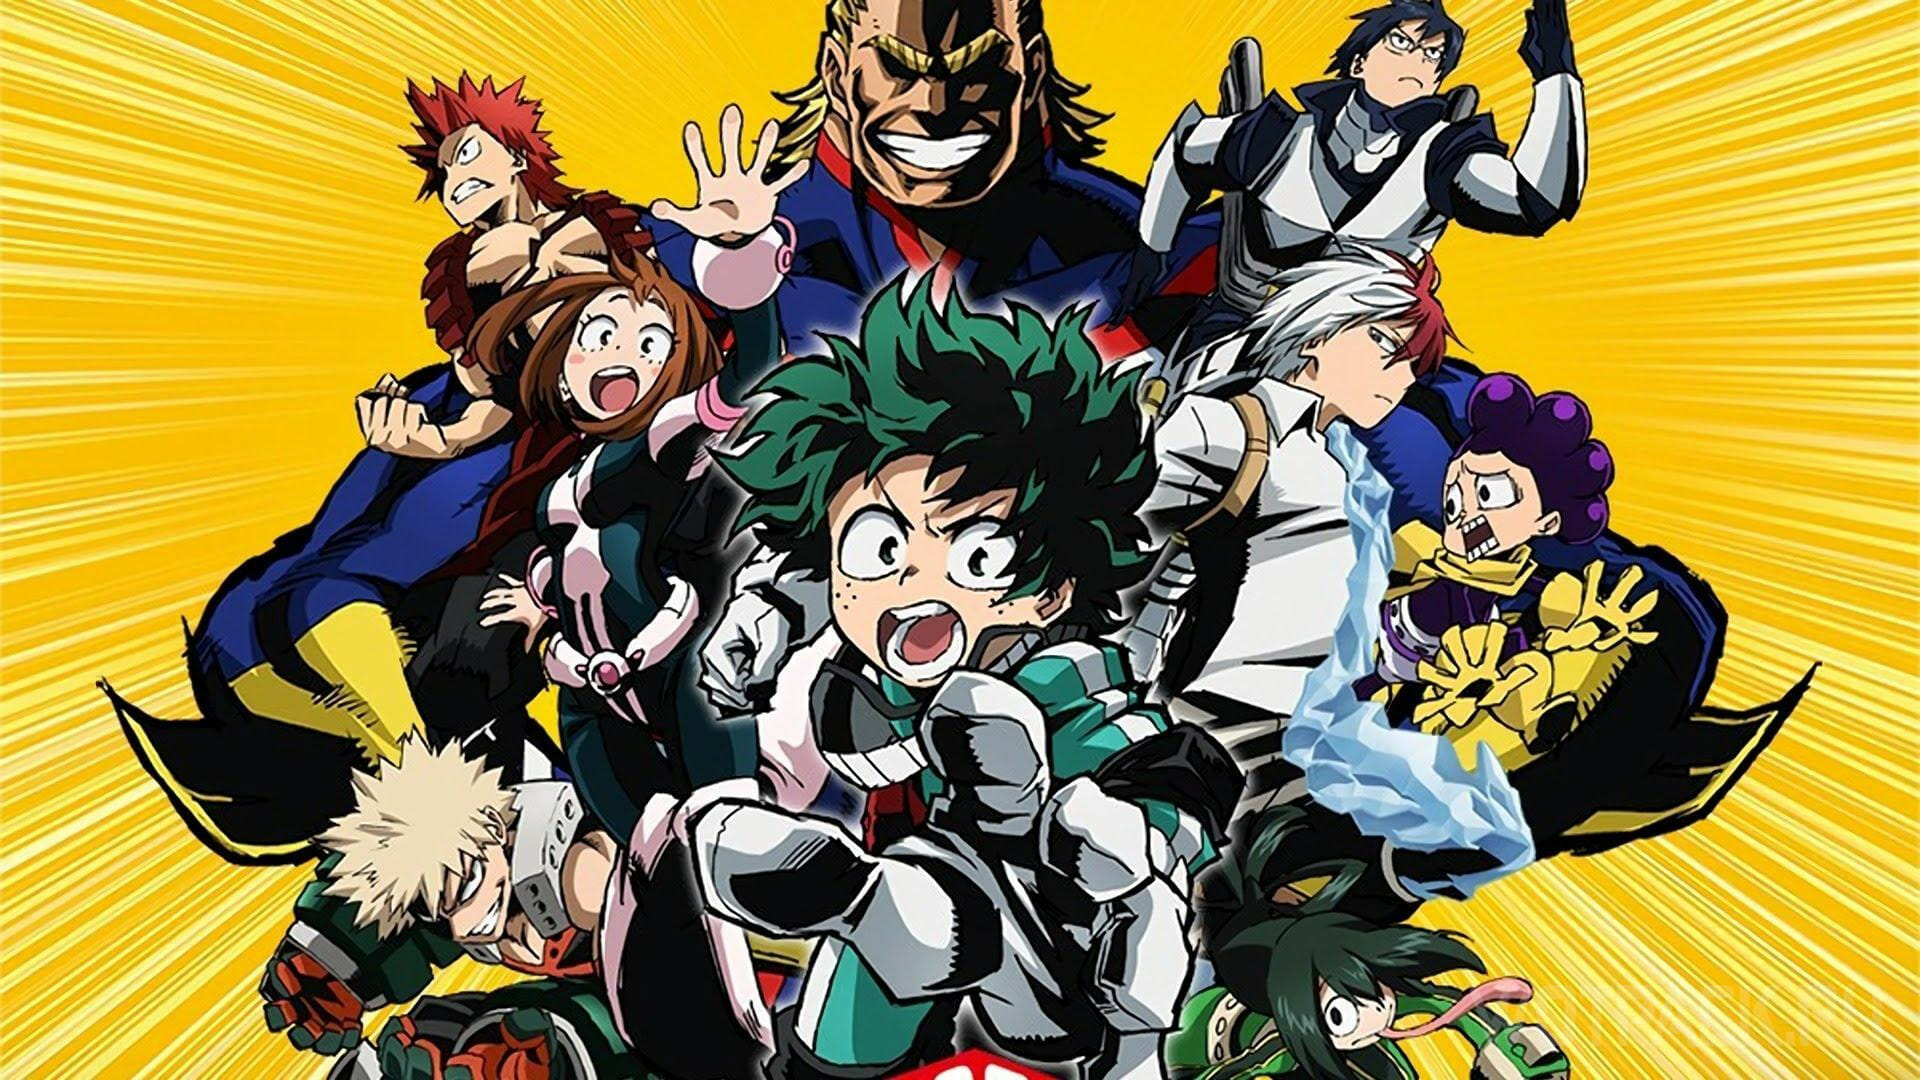 My Hero Academia”: Com teaser, 7ª temporada do anime é anunciada - POPline